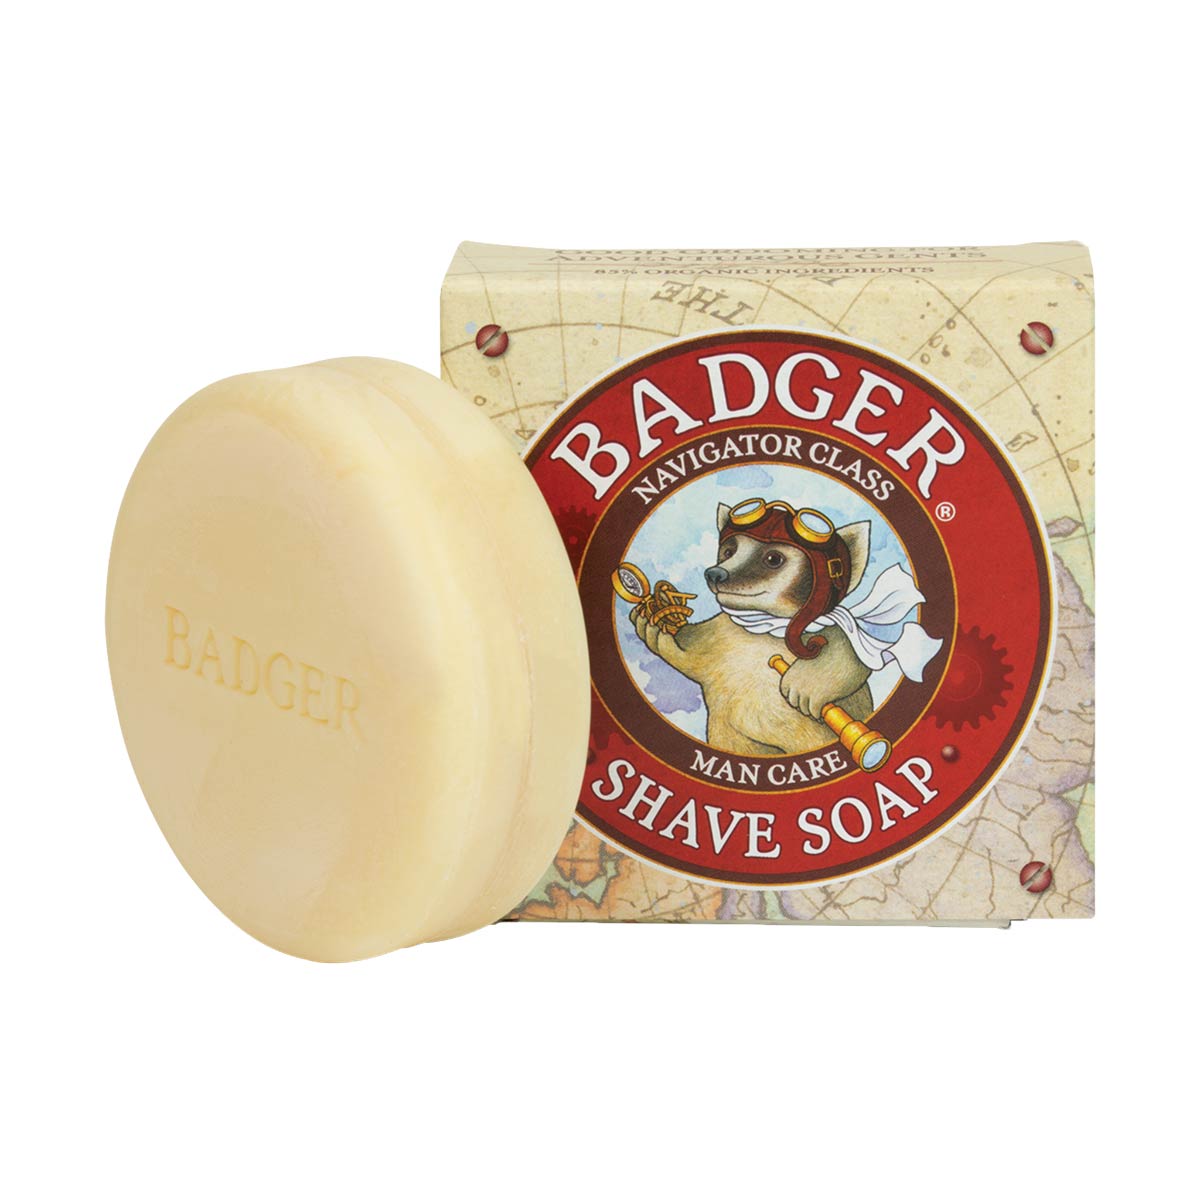 Badger Shaving Soap Bar 89g